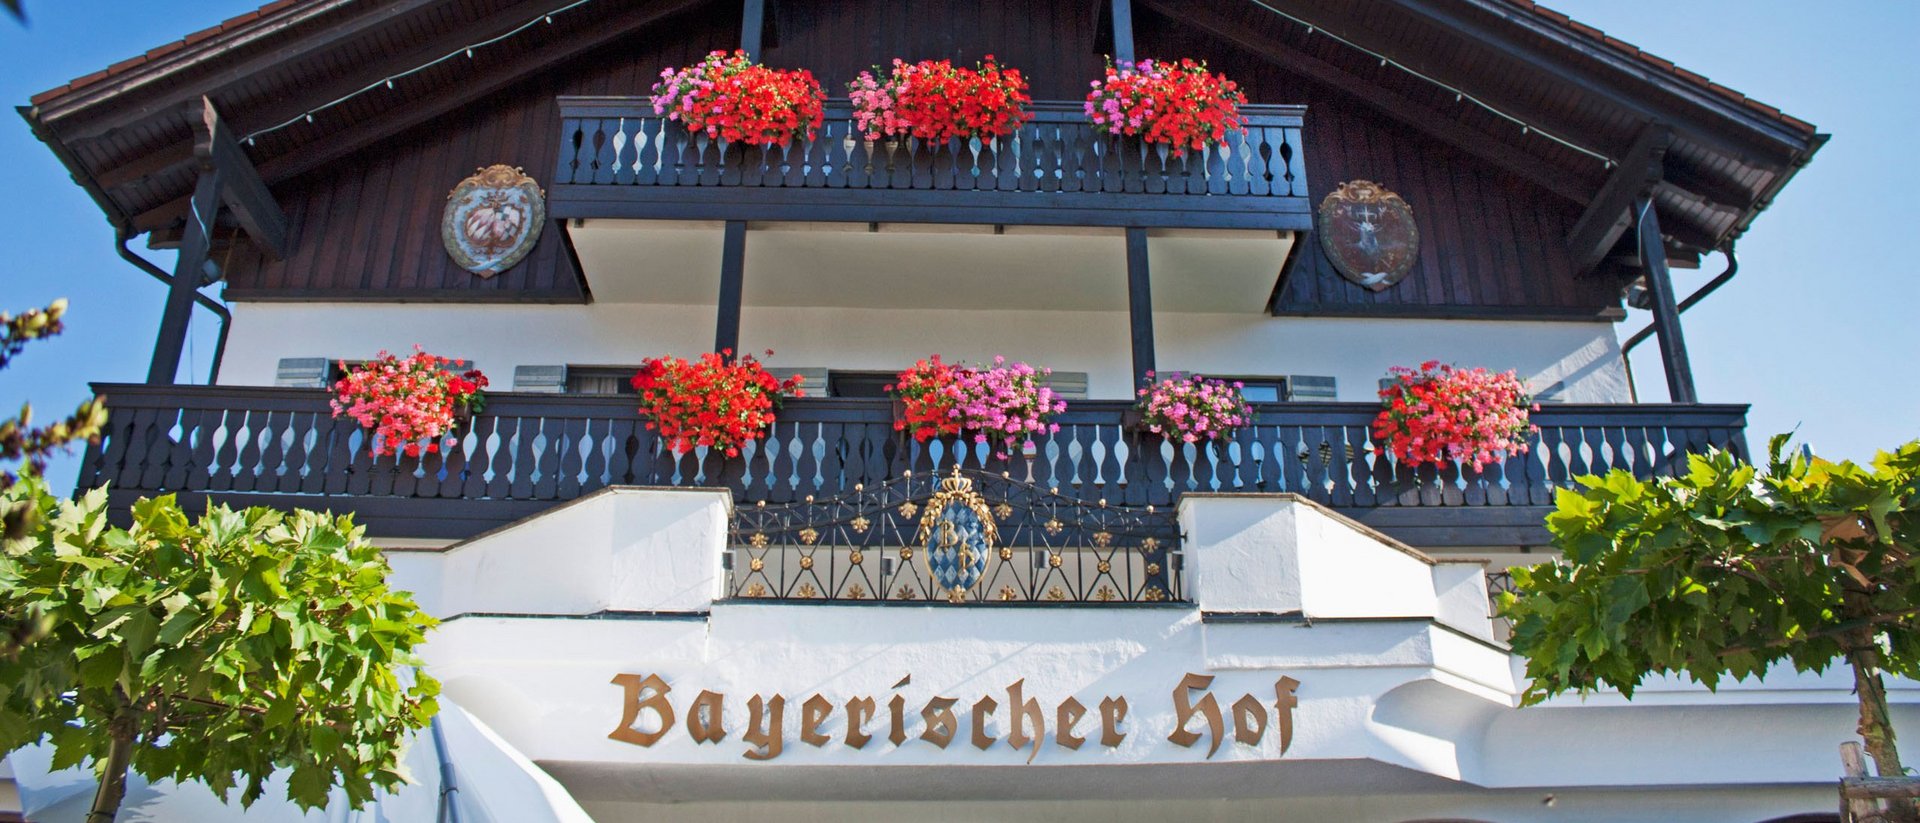 Ihr Hotel Bayerischer Hof in Oberstaufen